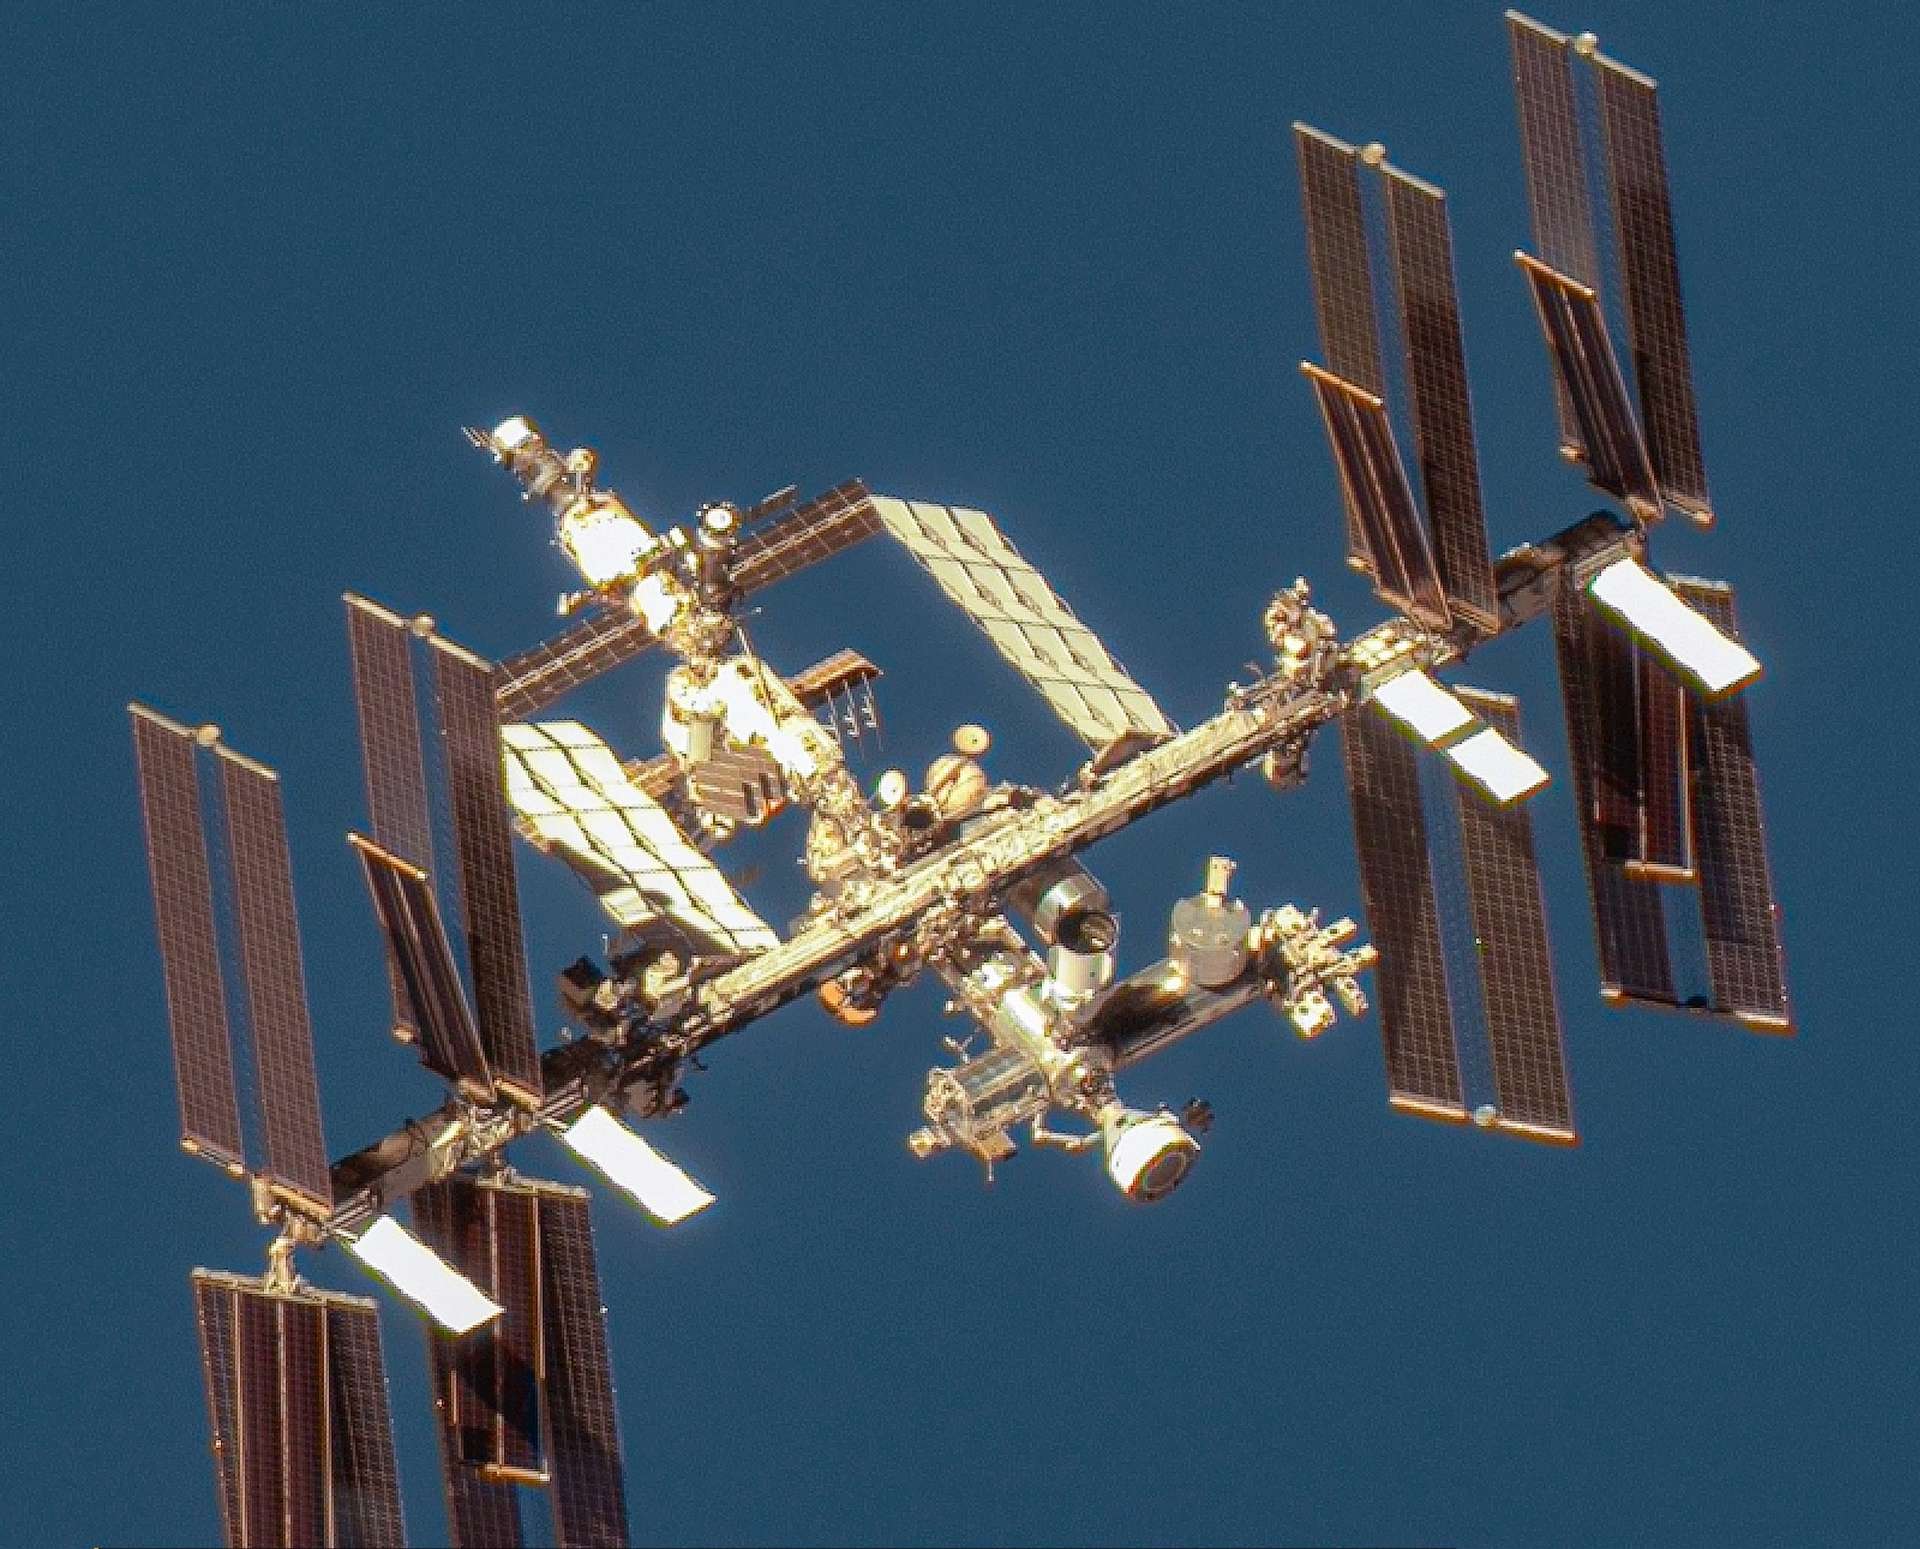 Un’immagine mozzafiato della stazione spaziale in orbita ripresa da un satellite